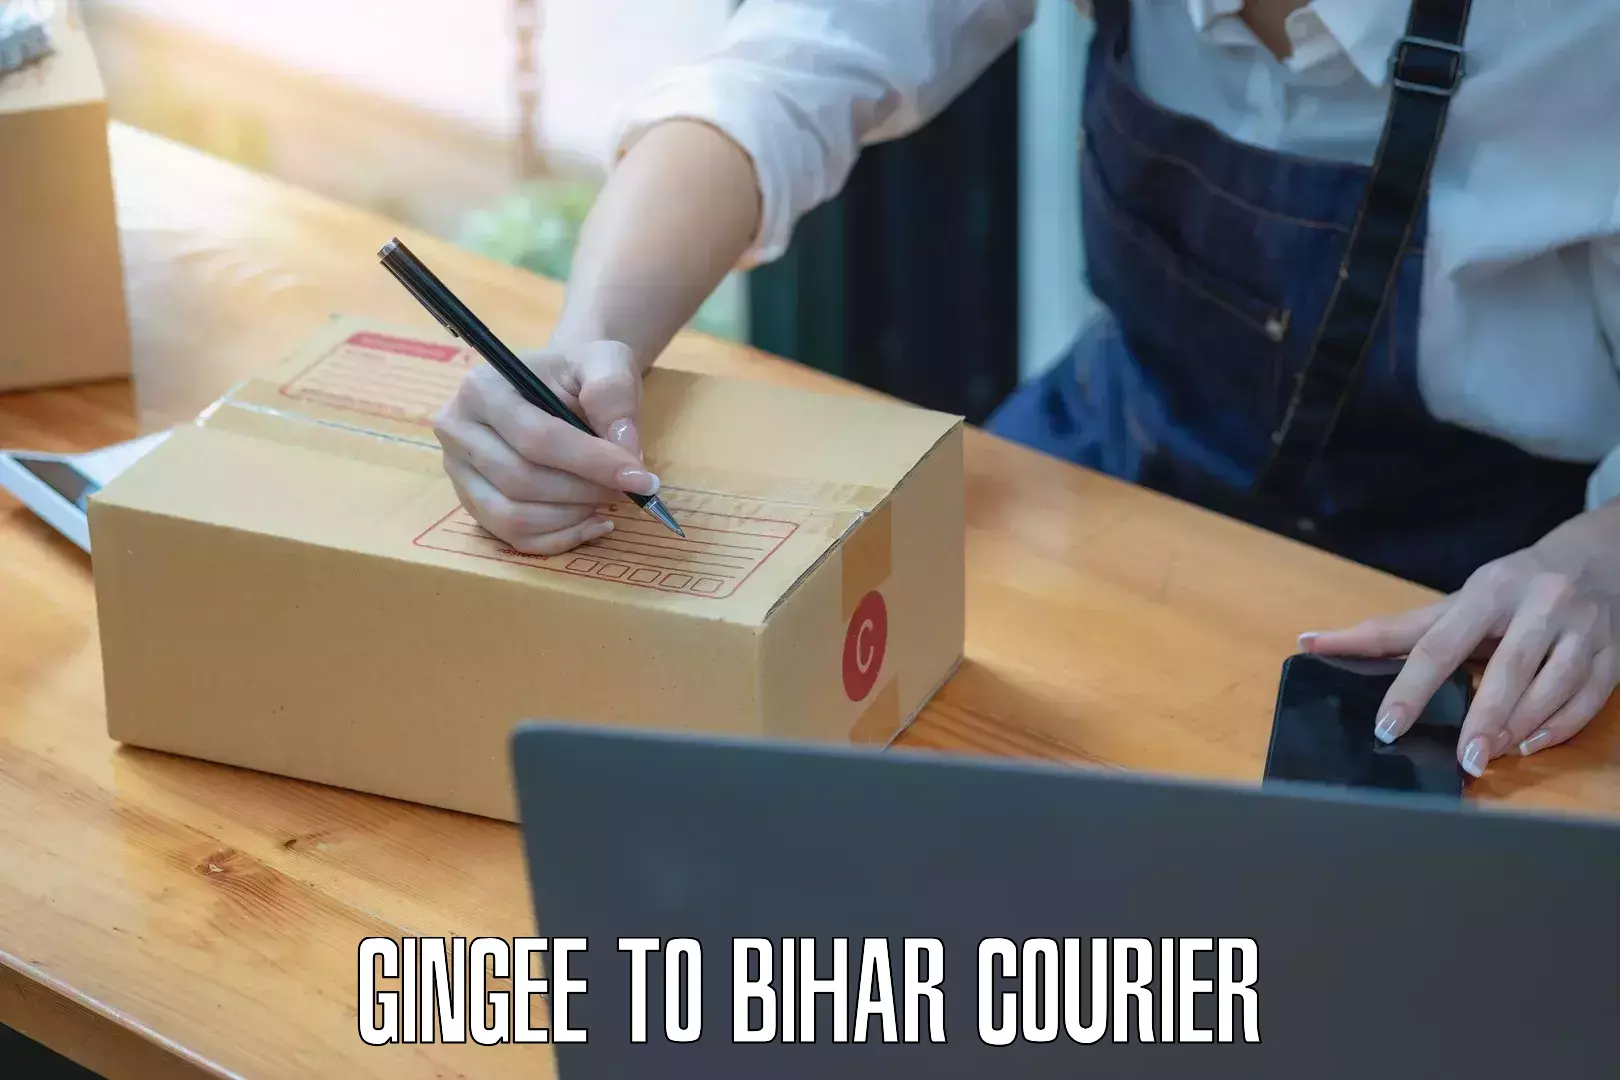 Customer-centric shipping in Gingee to Bihar Sharif